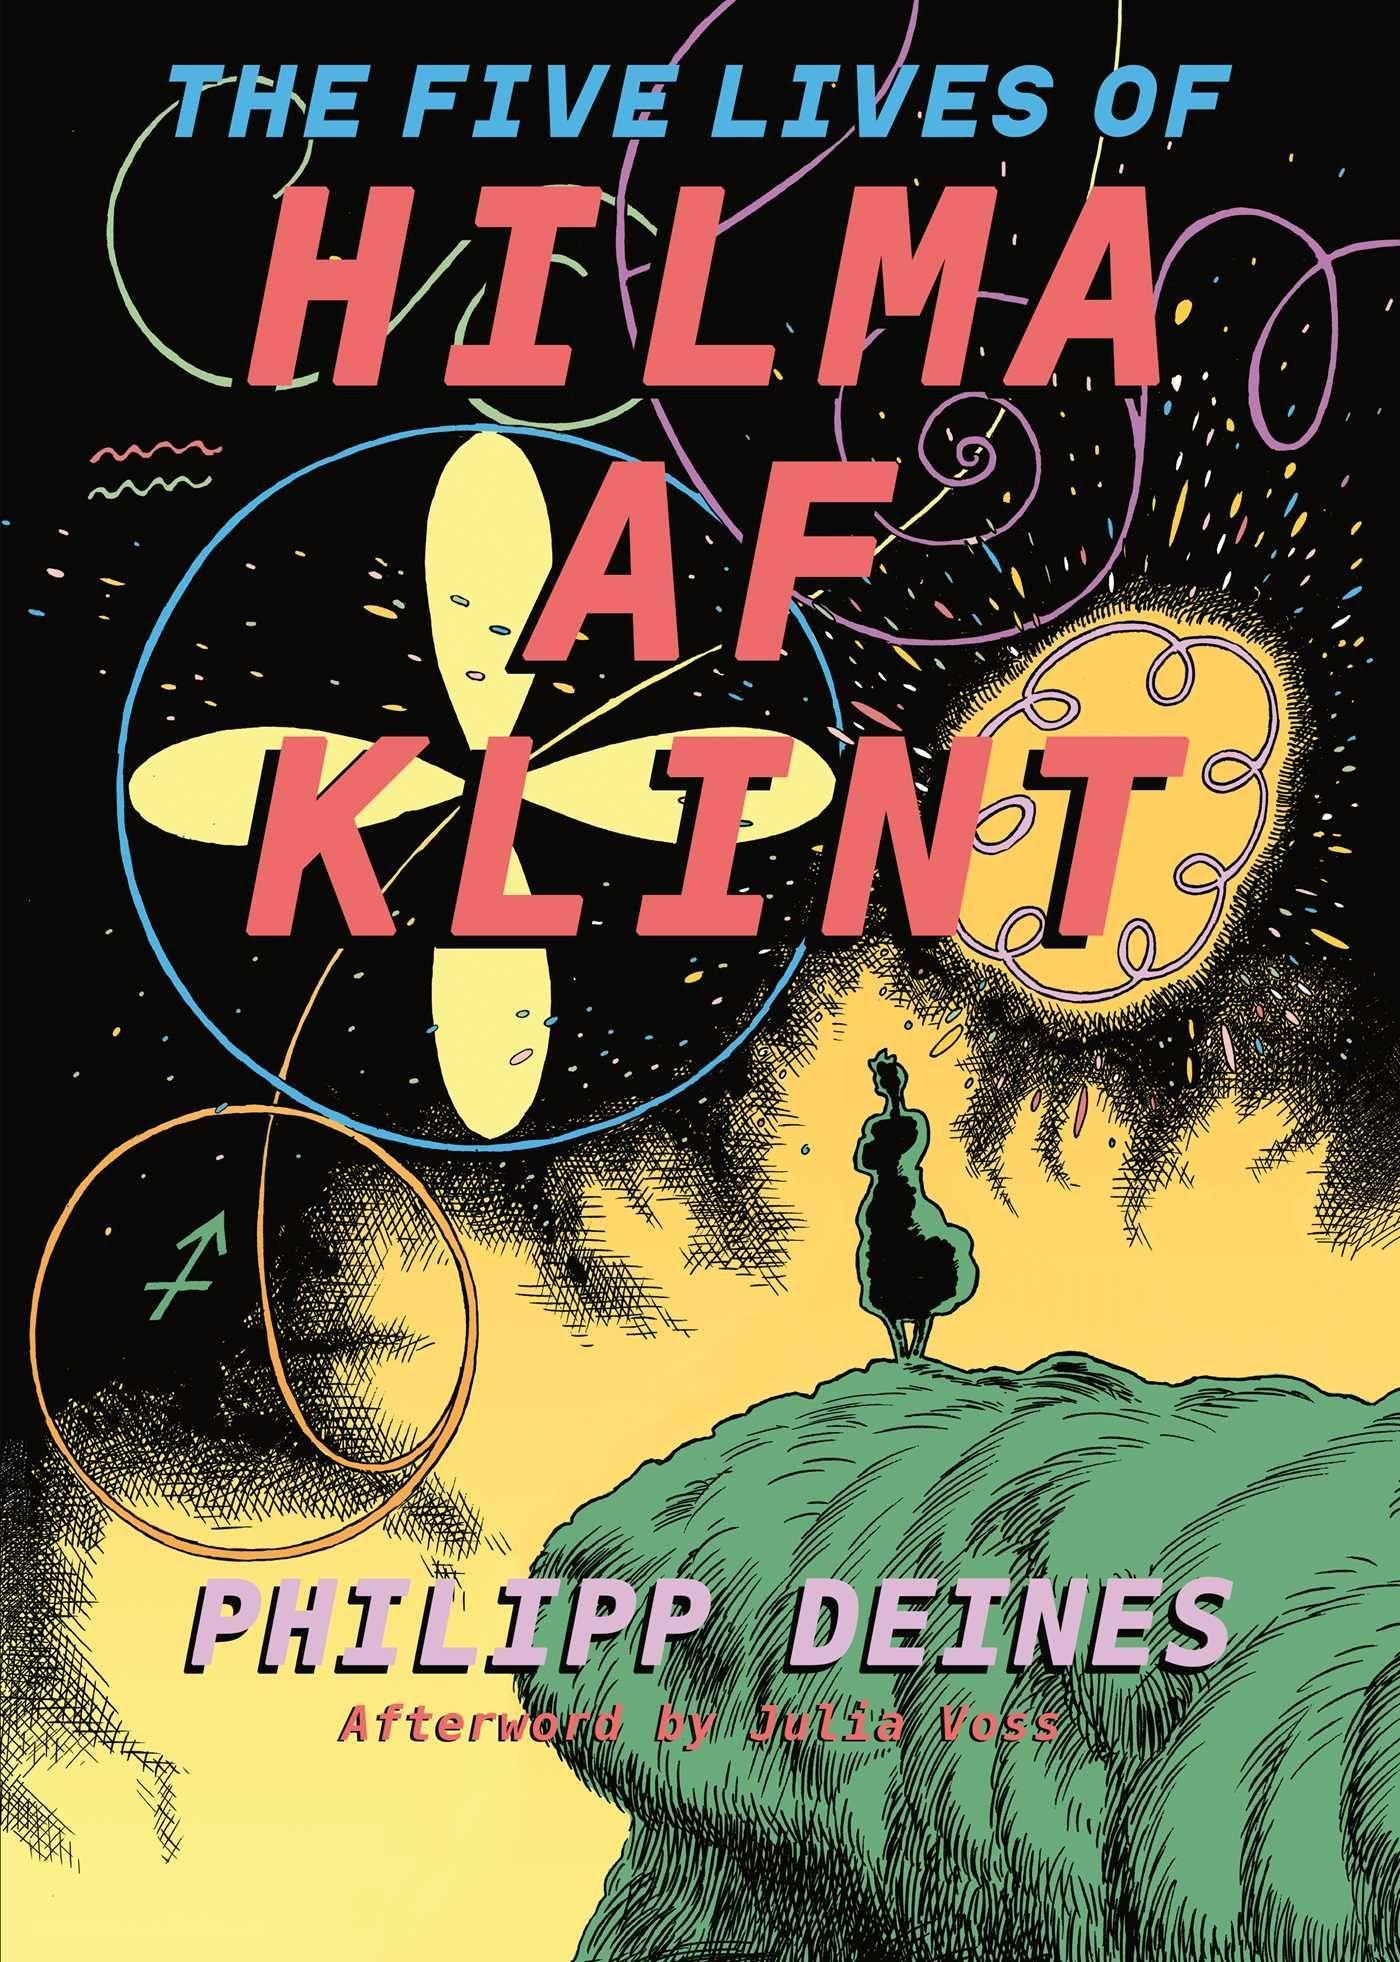 The Five Lives of Hilma af Klint - af Klint, Hilma Deines, Phillipp Voss, Julia